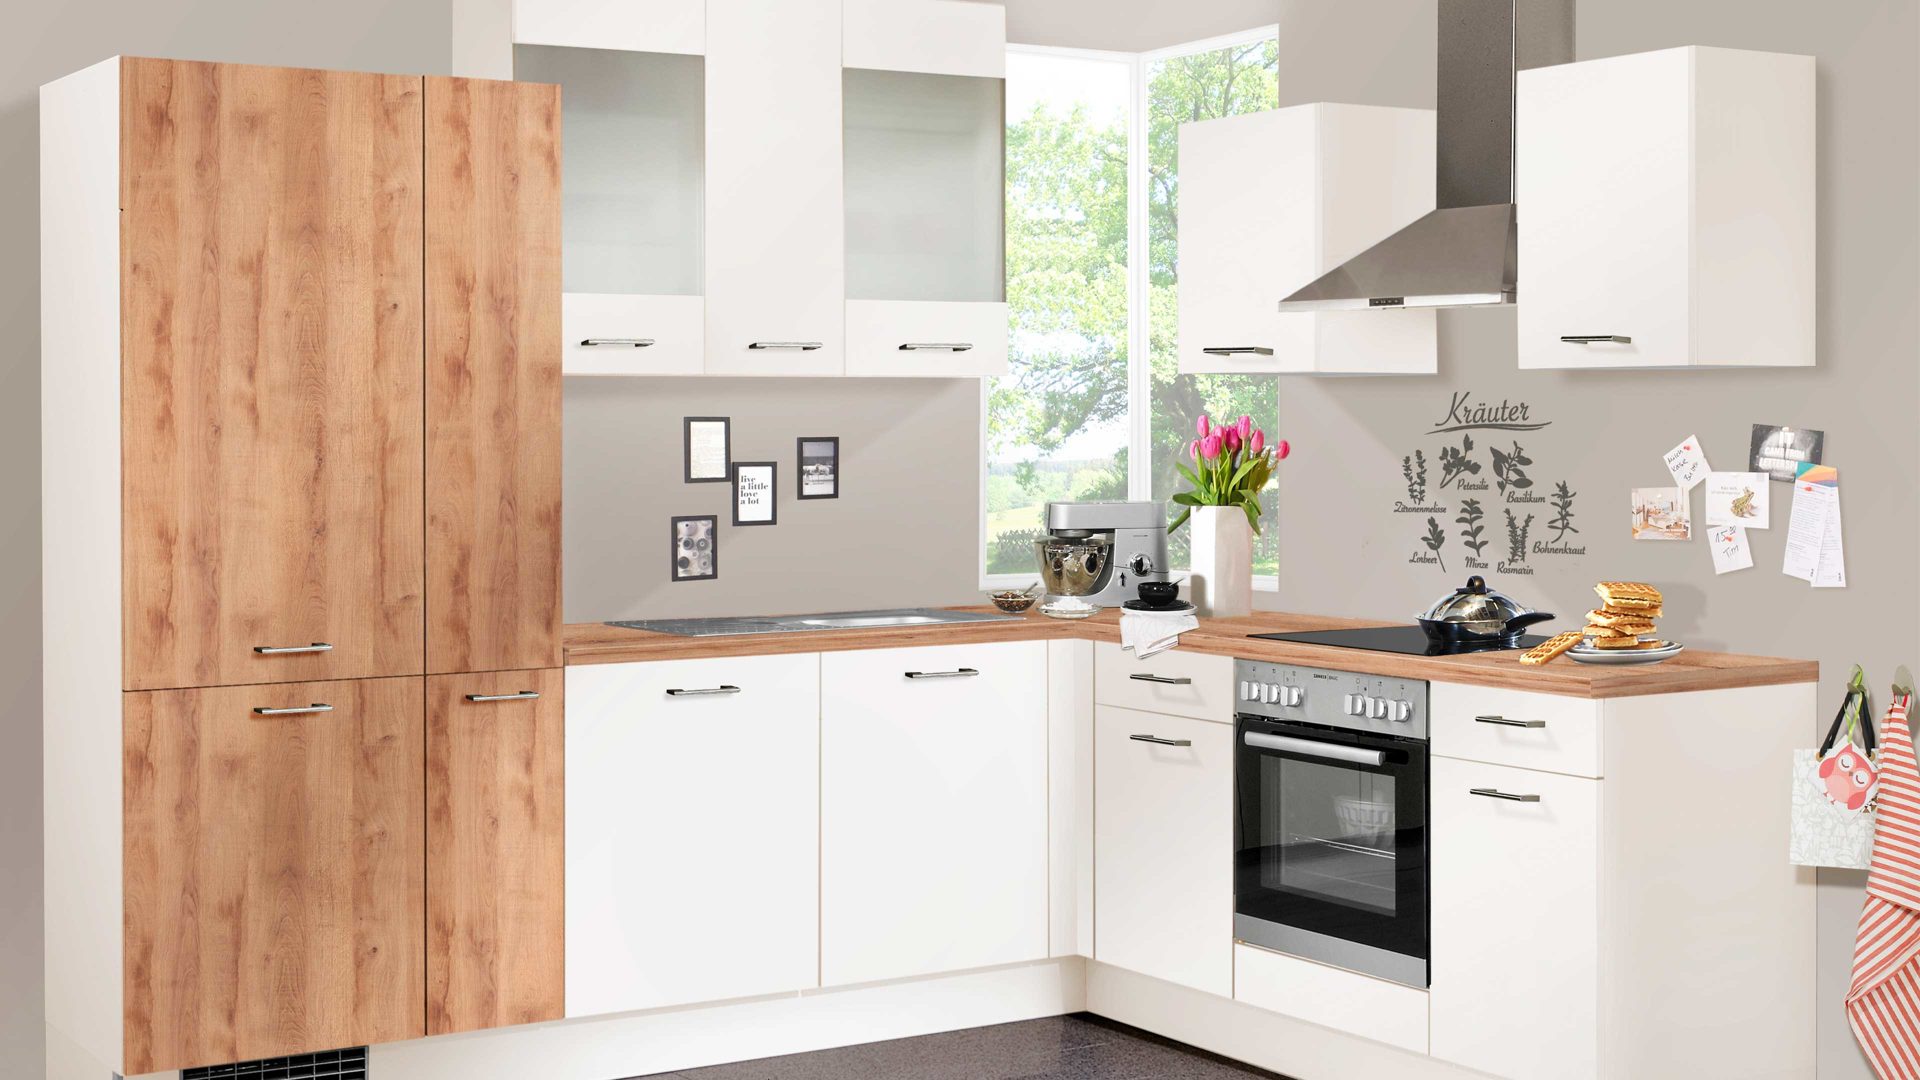 Einbauküche Pino küchen aus Holz in Weiß pino Einbauküche inklusive Einbaugeräte Magnolie & Honig Eiche - Stellfläche ca. 275 x 205 cm